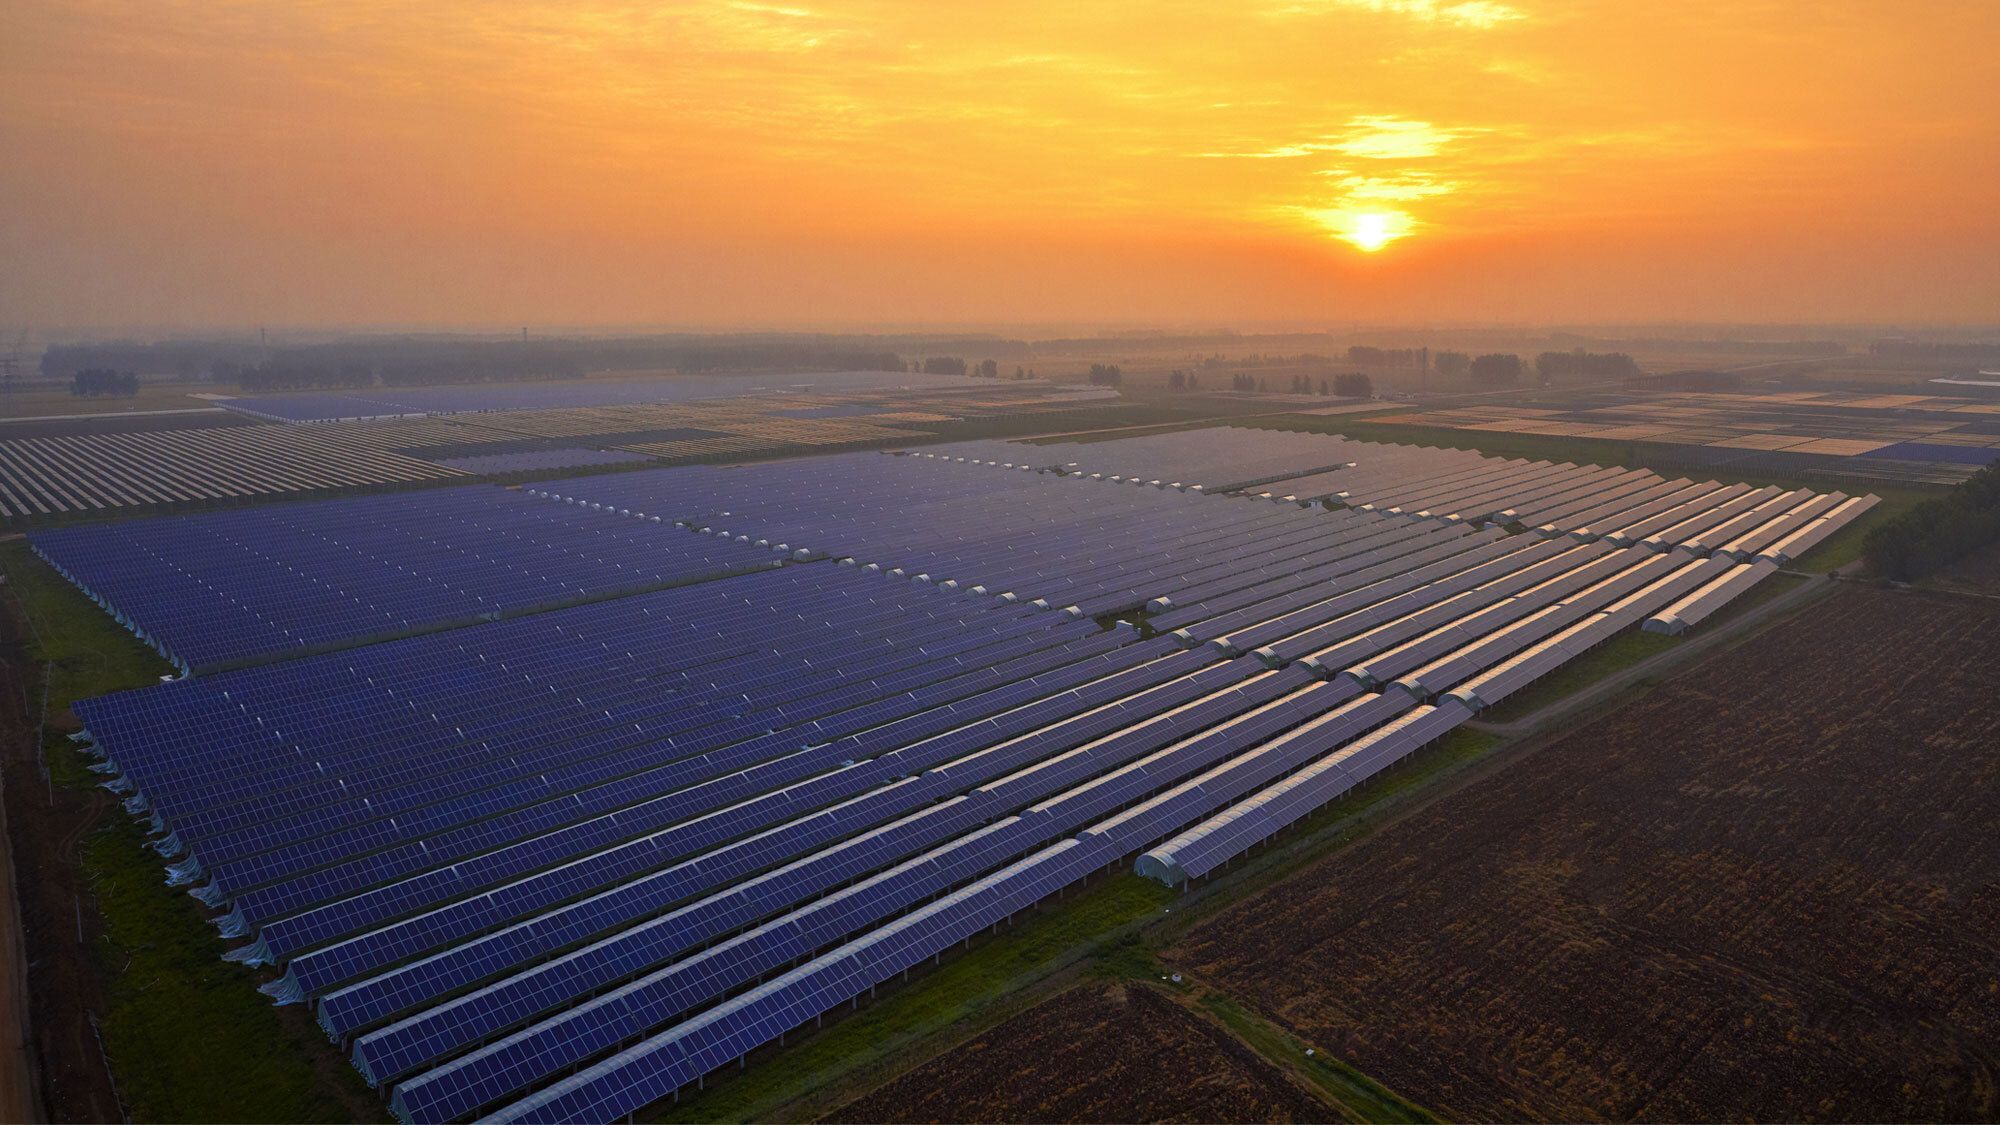 Solar Farm with sunset